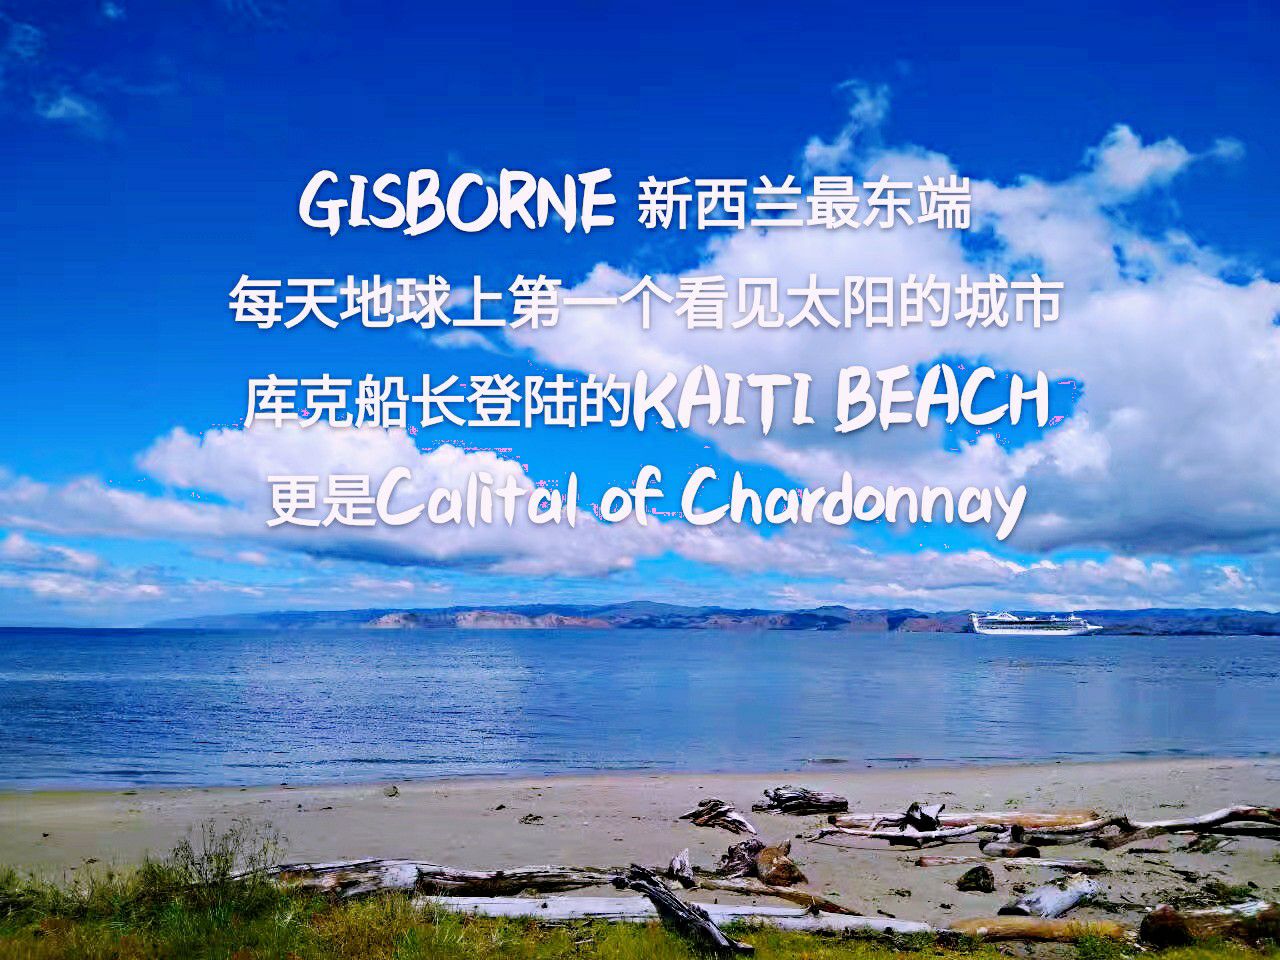 GISBORNE，中文名是吉斯伯恩，毛利语名称叫“泰瑞维提”，意思是“海岸濒临艳阳高挂的碧海”，坐落